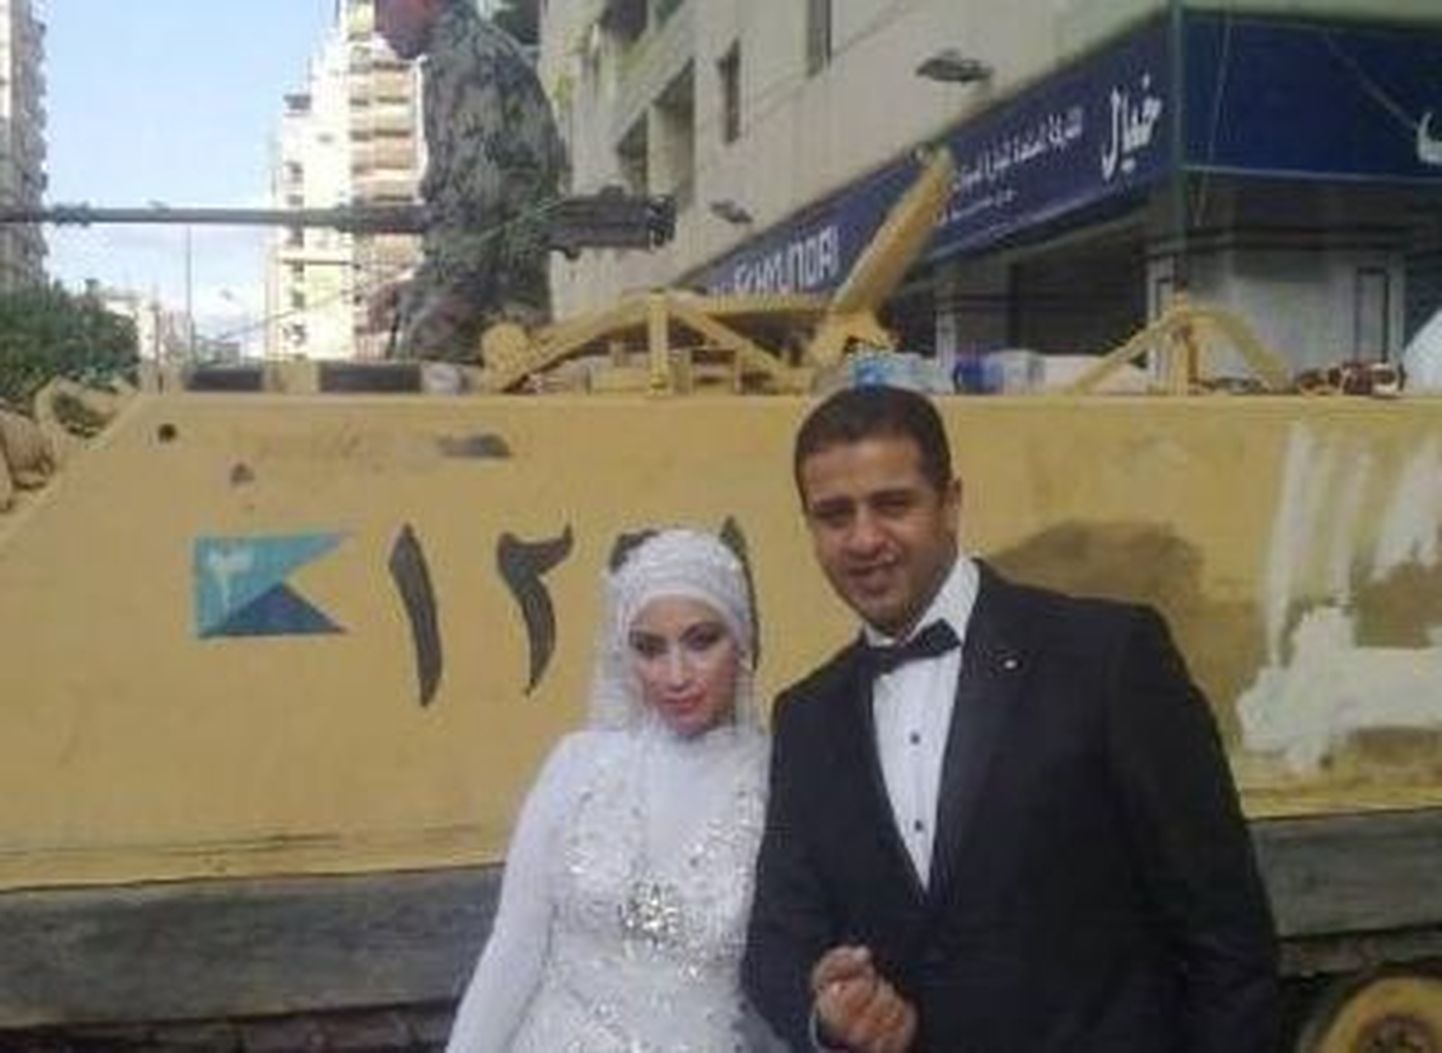 Egiptlased abiellusid keset «kuuma» Tahriri väljakut